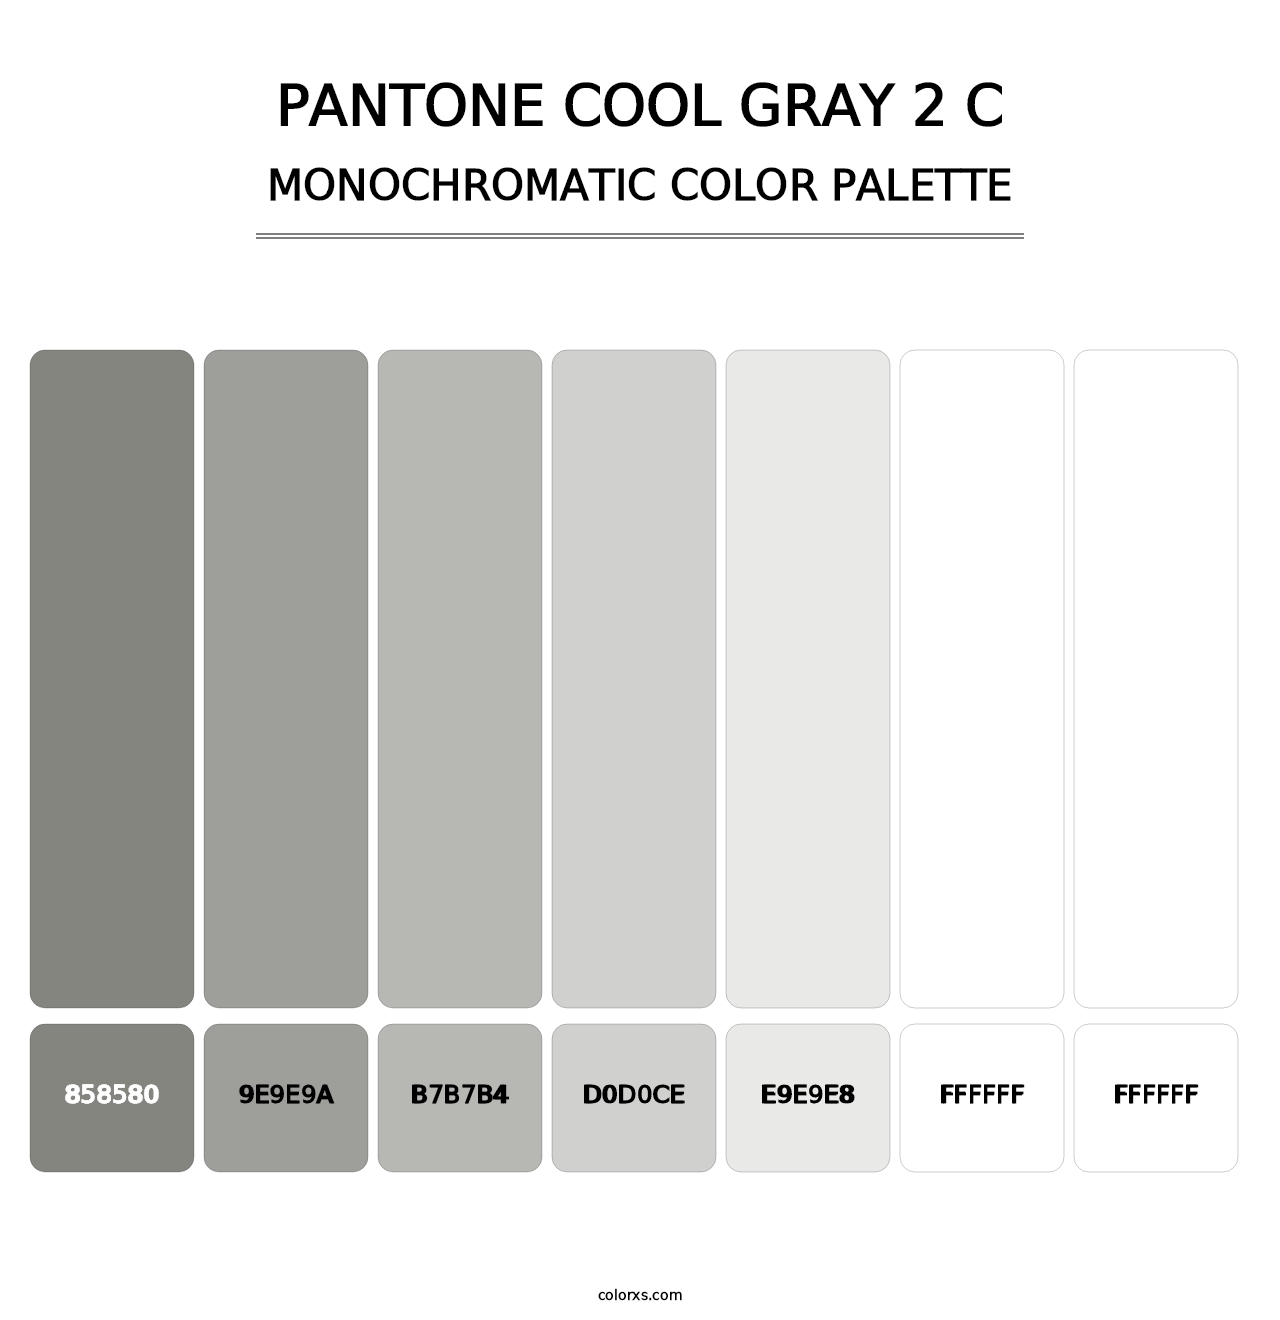 PANTONE Cool Gray 2 C - Monochromatic Color Palette